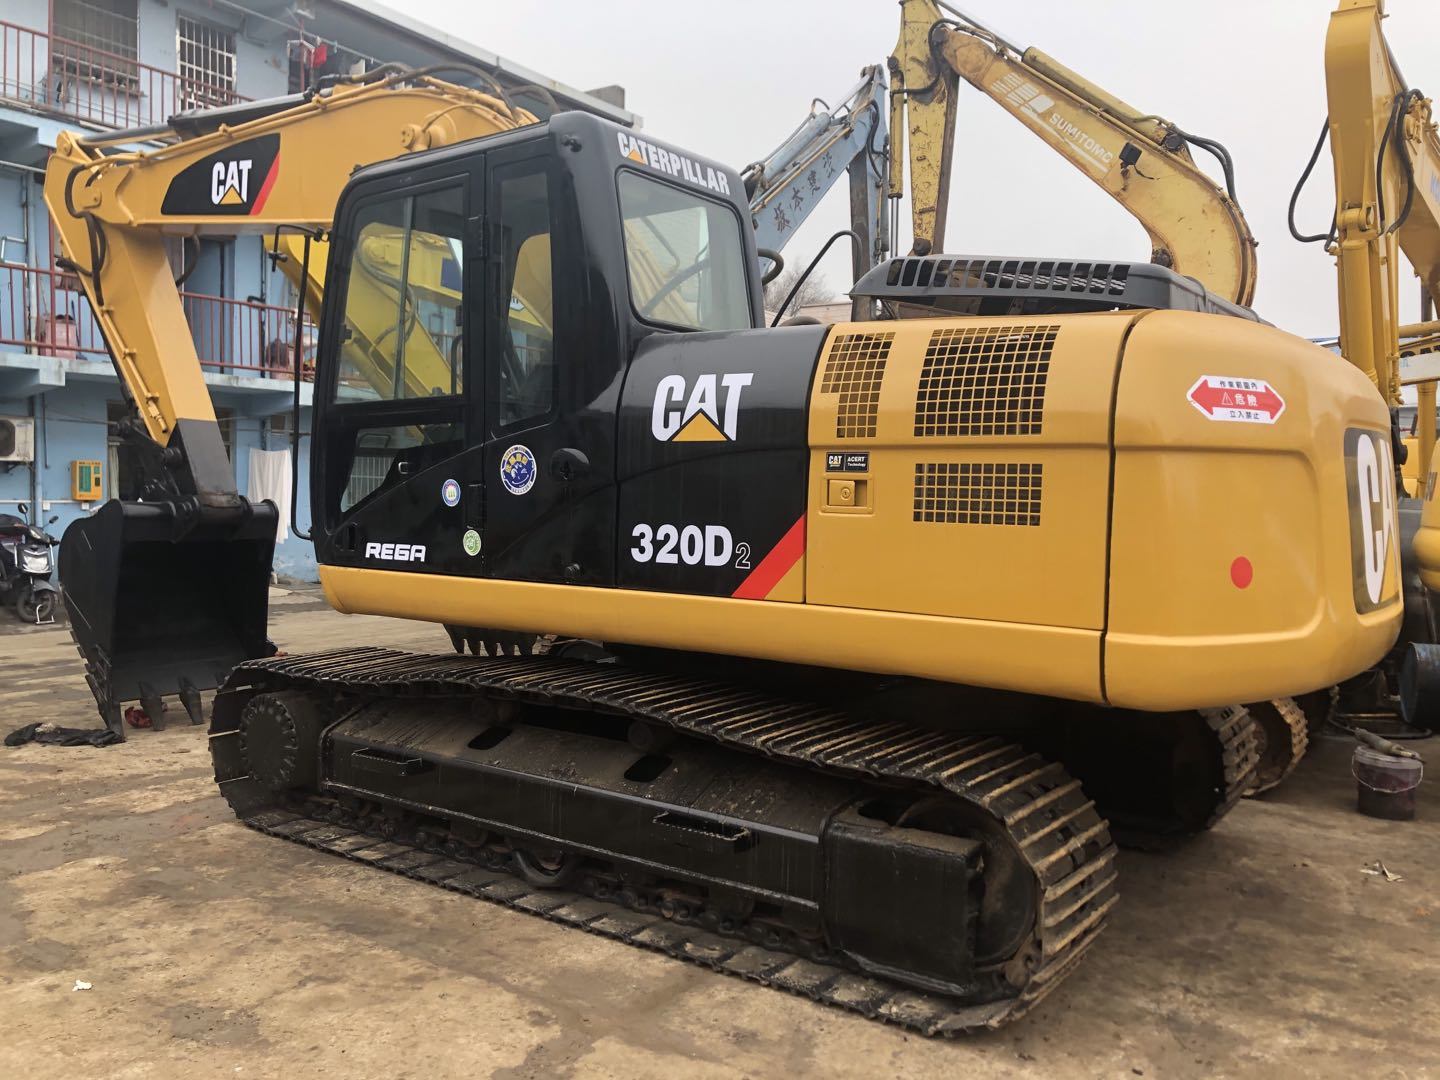 Caterpillar 320D excavator